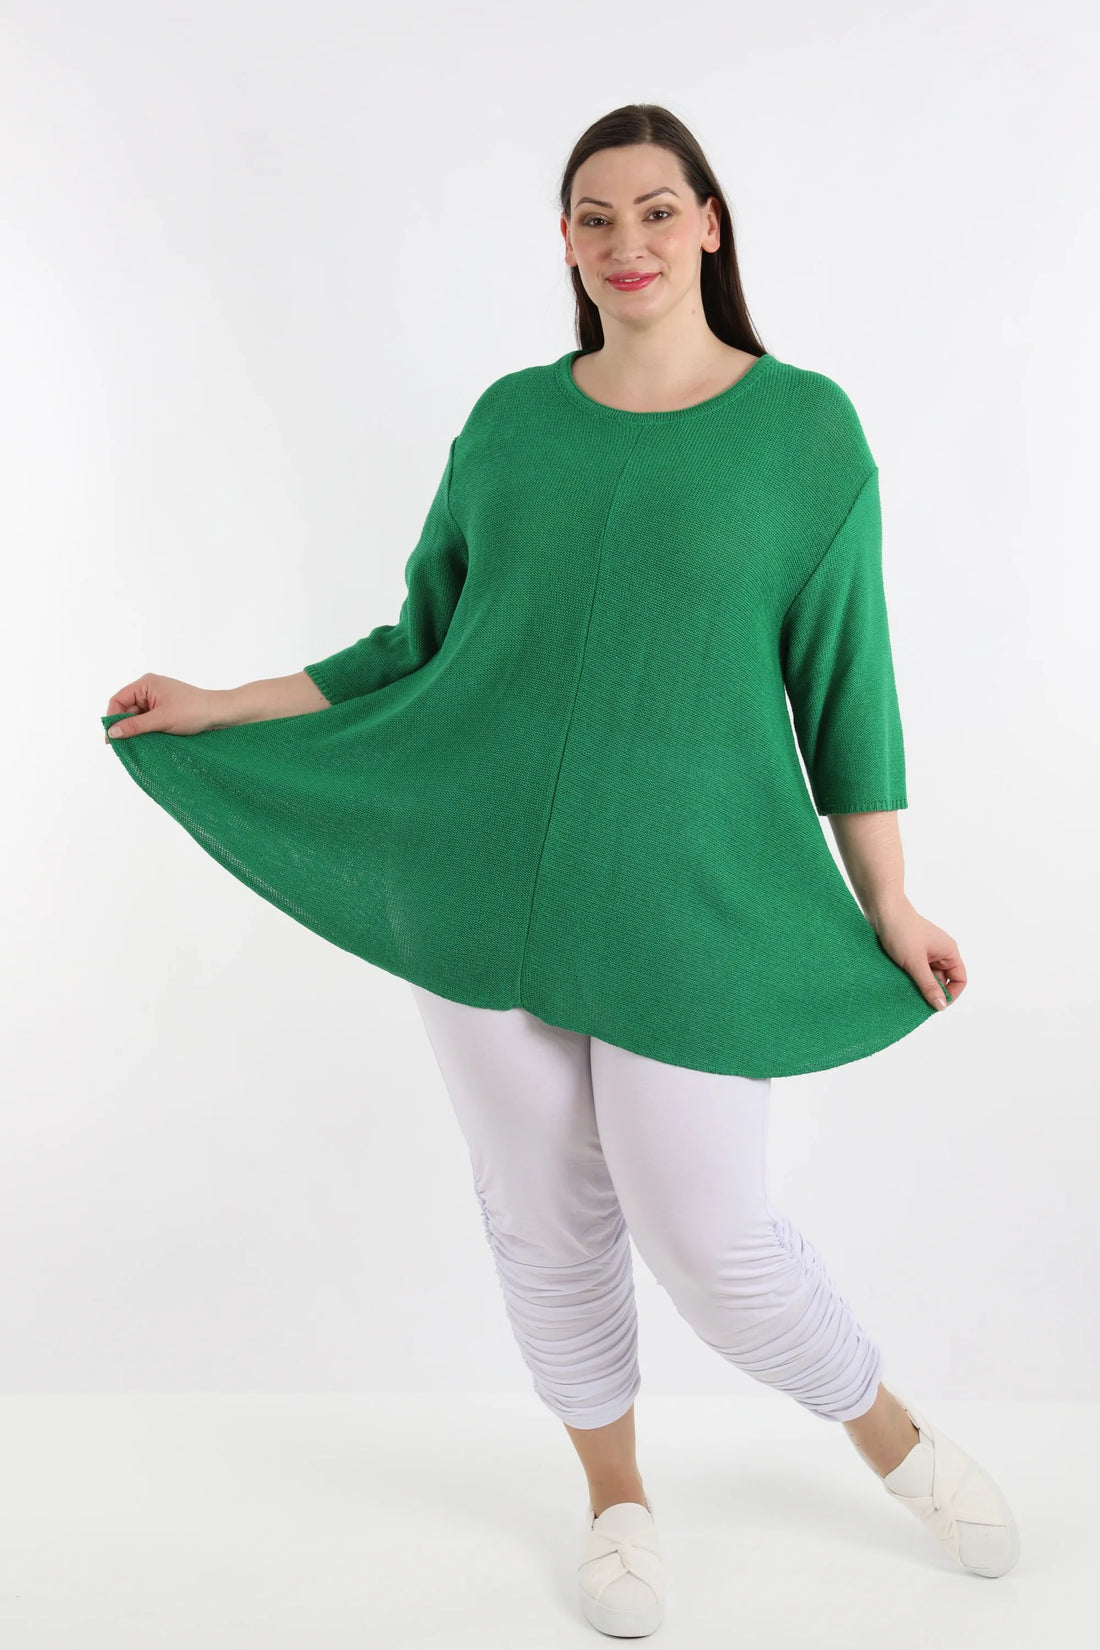 Shirt von AKH Fashion aus Baumwolle in Glocken-Form, 1110.01892, Smaragardgrün, Schick